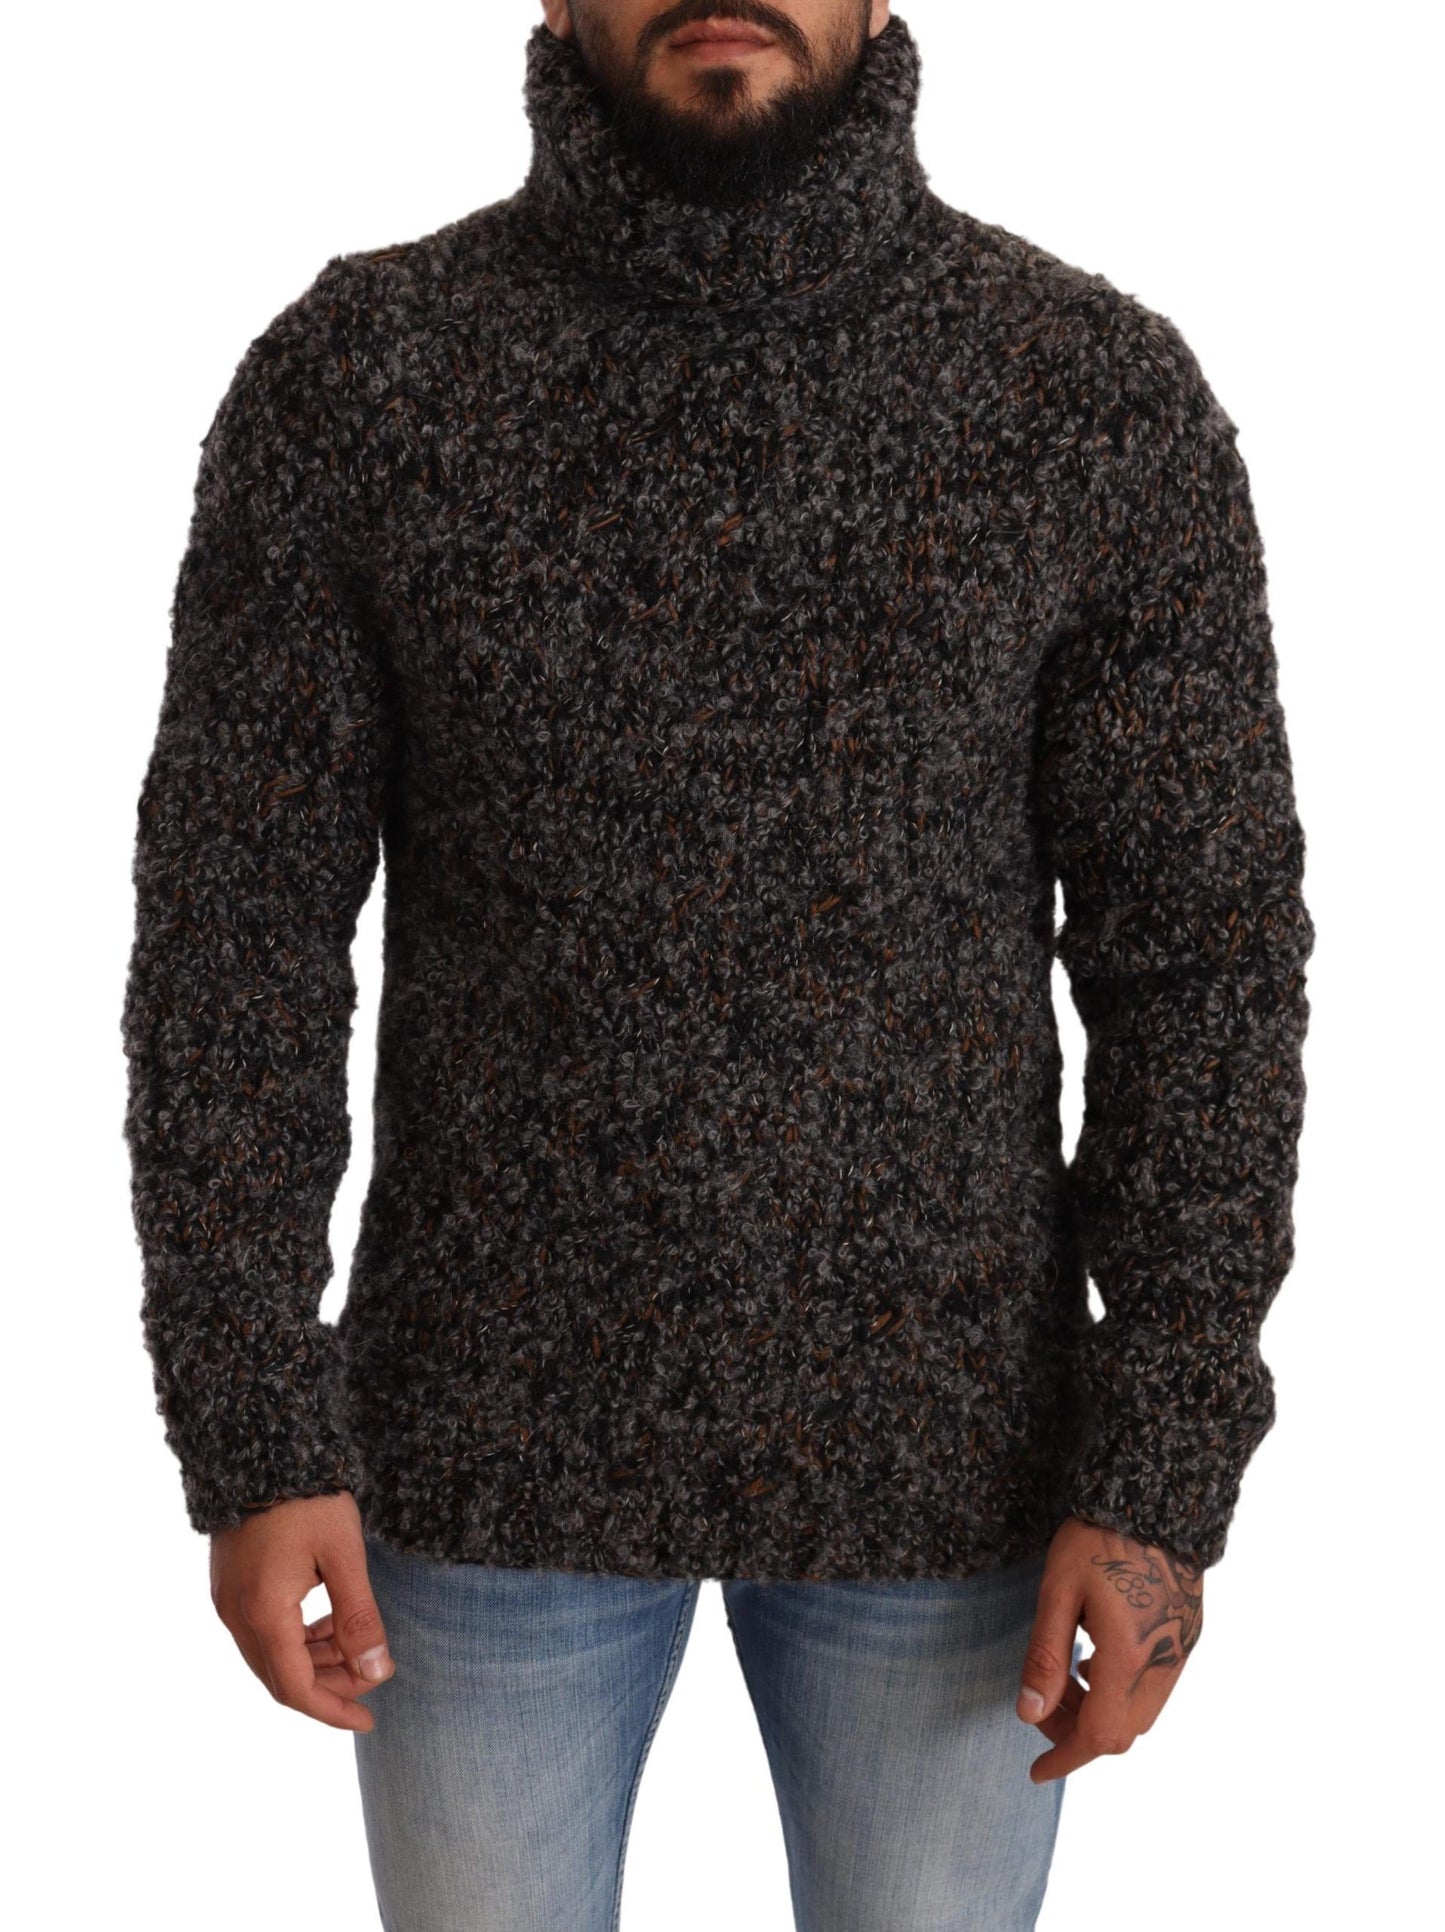 Dolce & Gabbana Elegant Speckled Turtleneck Wool-Blend Sweater